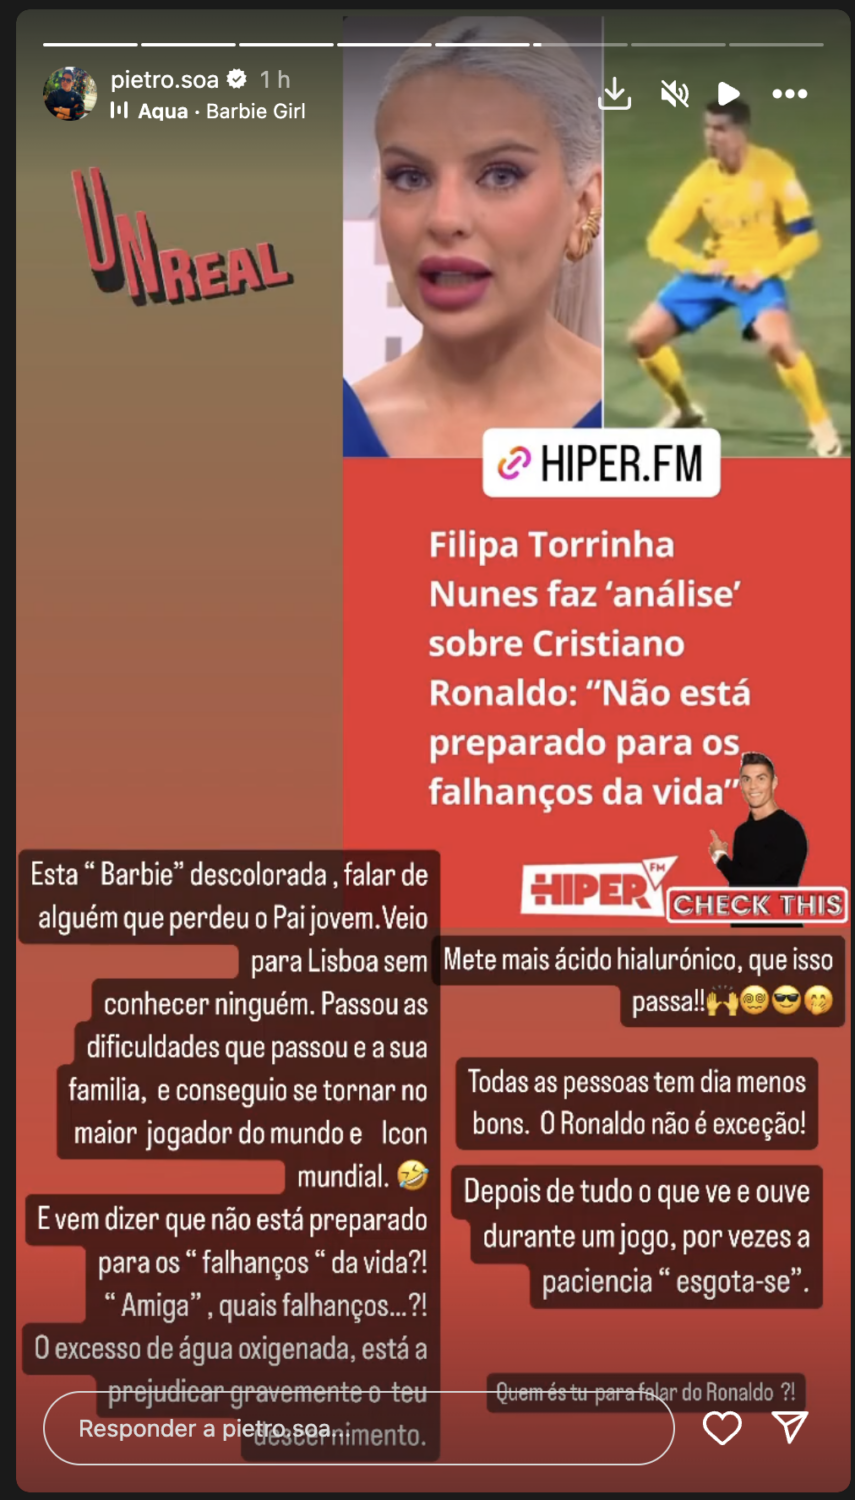 Pedro Soá indignado com observação de Filipa Torrinha Nunes: “Quem és tu para falar do Ronaldo?!”